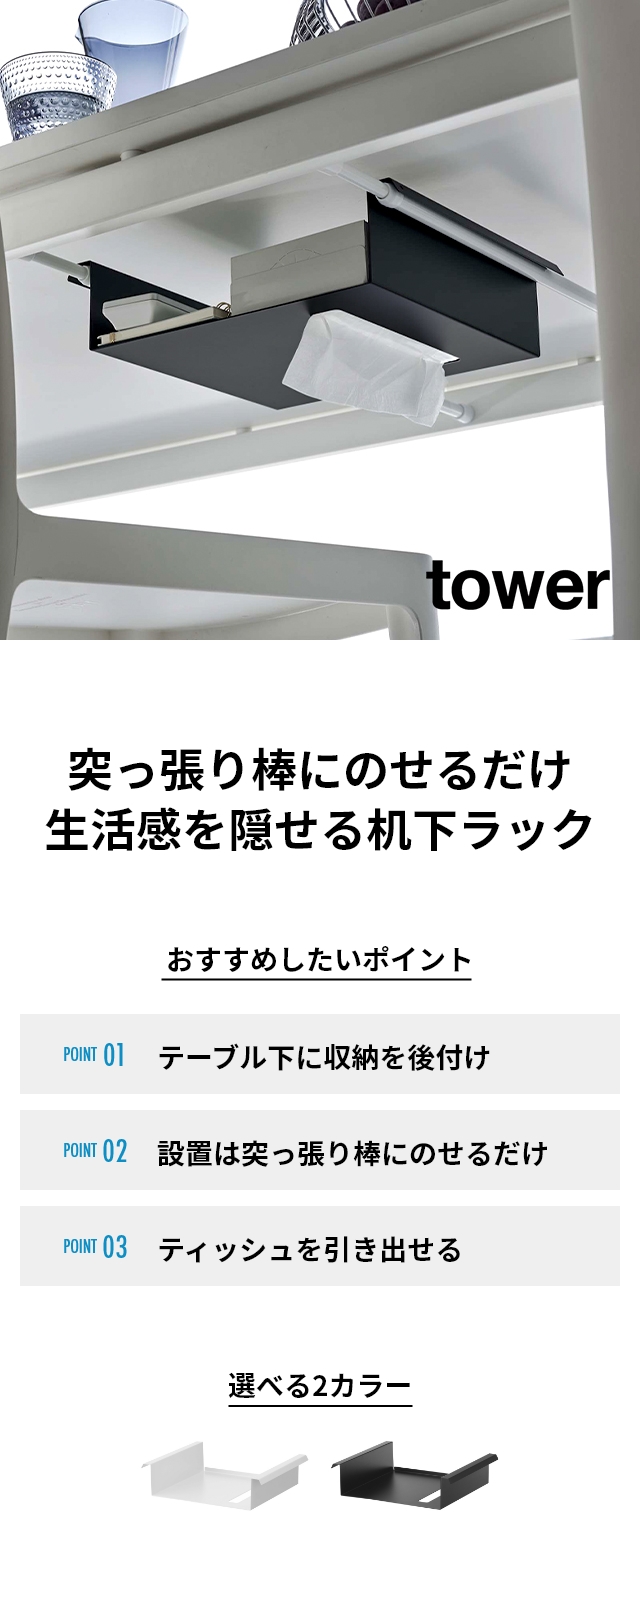 tower (タワー) テーブル下つっぱり棒用収納ラック